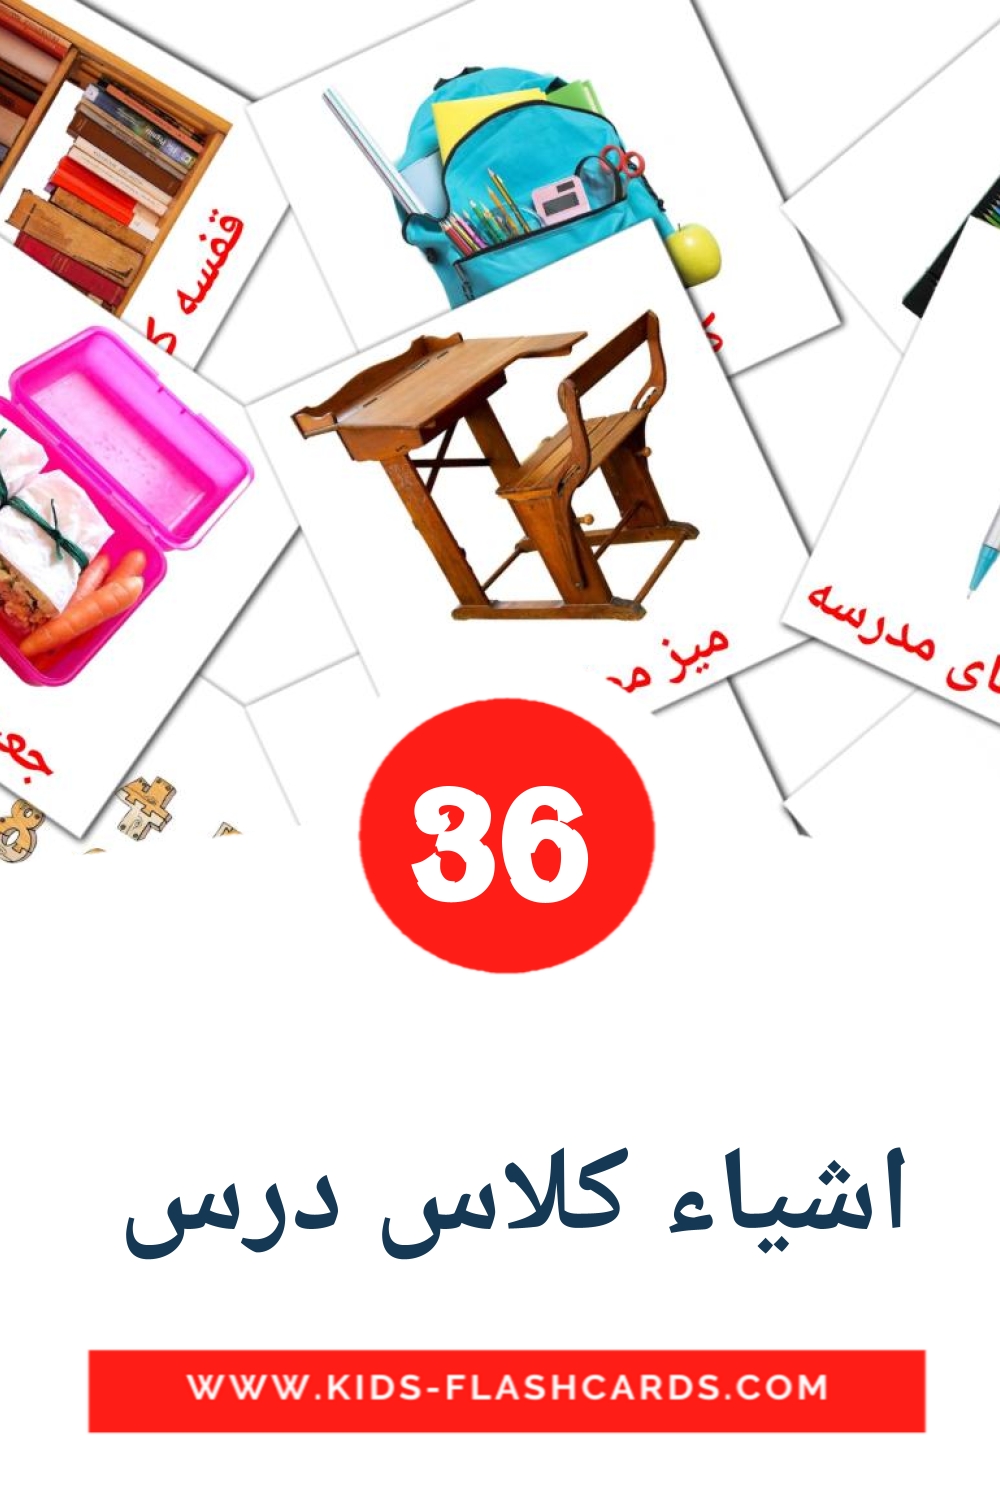 36 tarjetas didacticas de اشیاء کلاس درس  para el jardín de infancia en persa